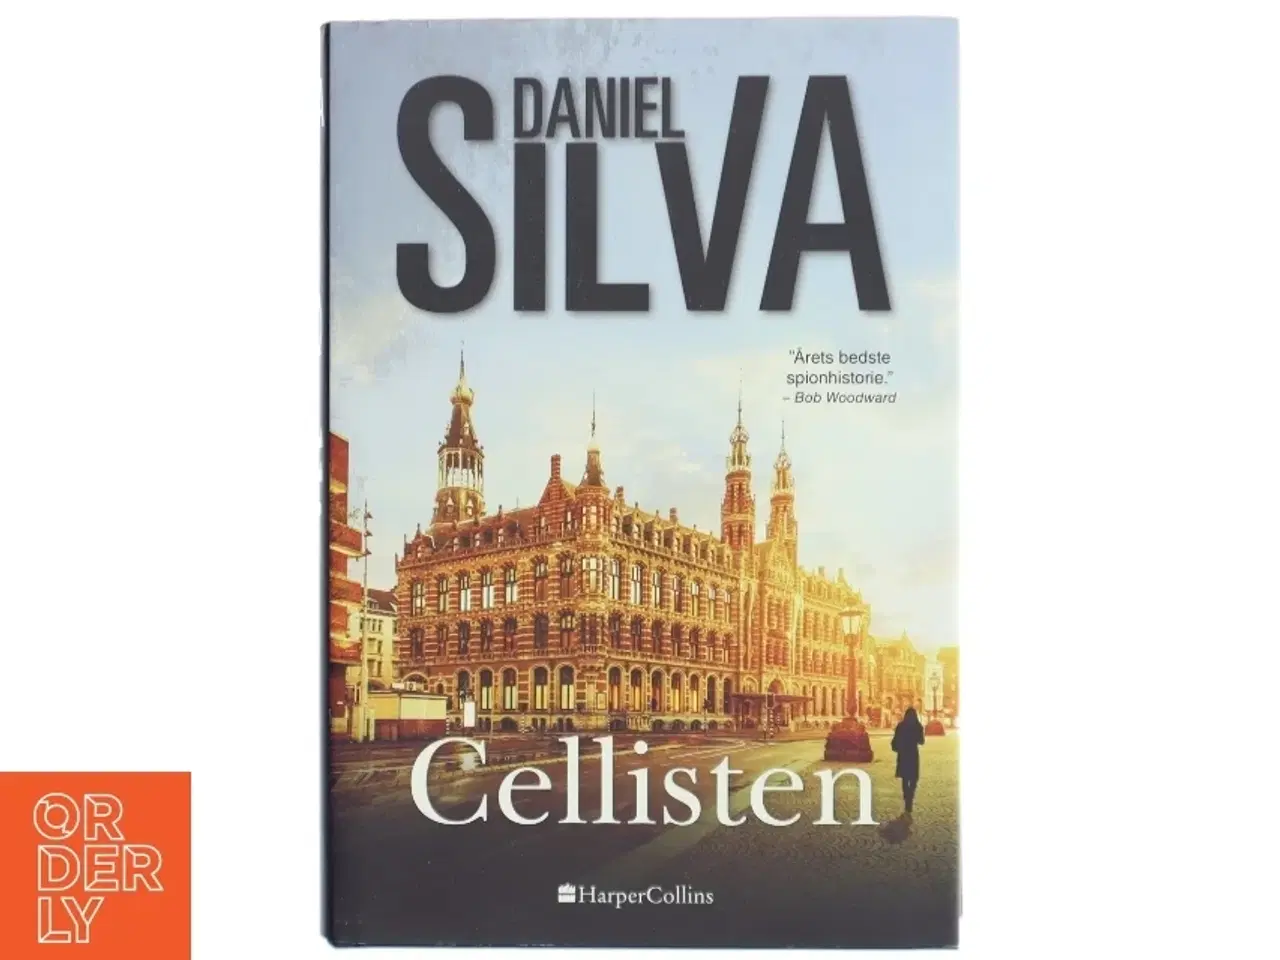 Billede 1 - 'Cellisten' af Daniel Silva (bog)